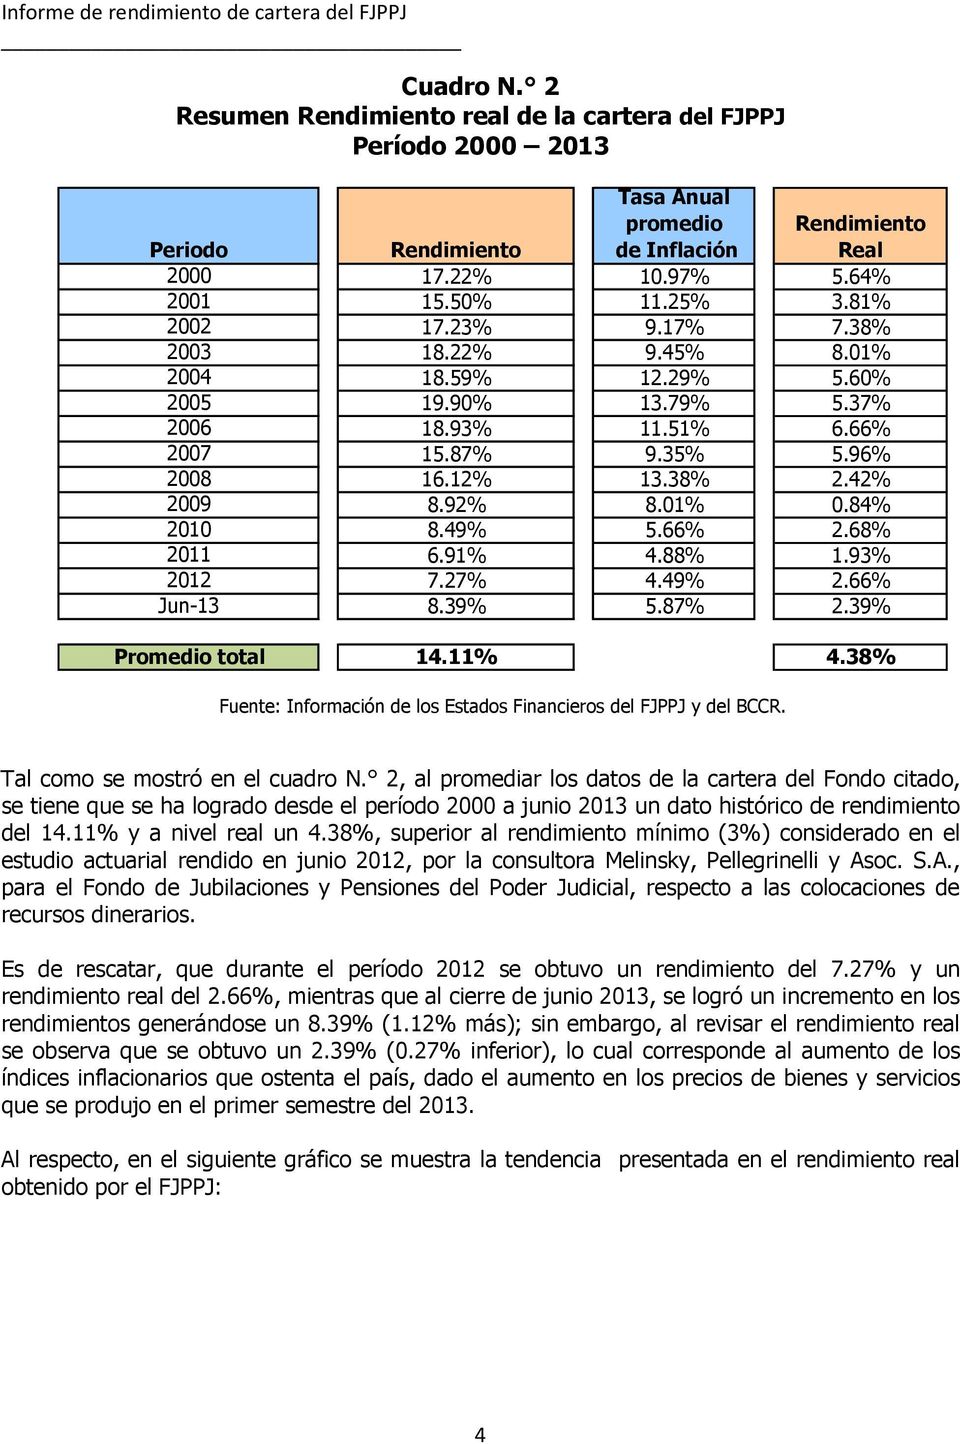 84% 2010 8.49% 5.66% 2.68% 2011 6.91% 4.88% 1.93% 2012 7.27% 4.49% 2.66% Jun-13 8.39% 5.87% 2.39% Promedio total 14.11% 4.38% Fuente: Información de los Estados Financieros del FJPPJ y del BCCR.